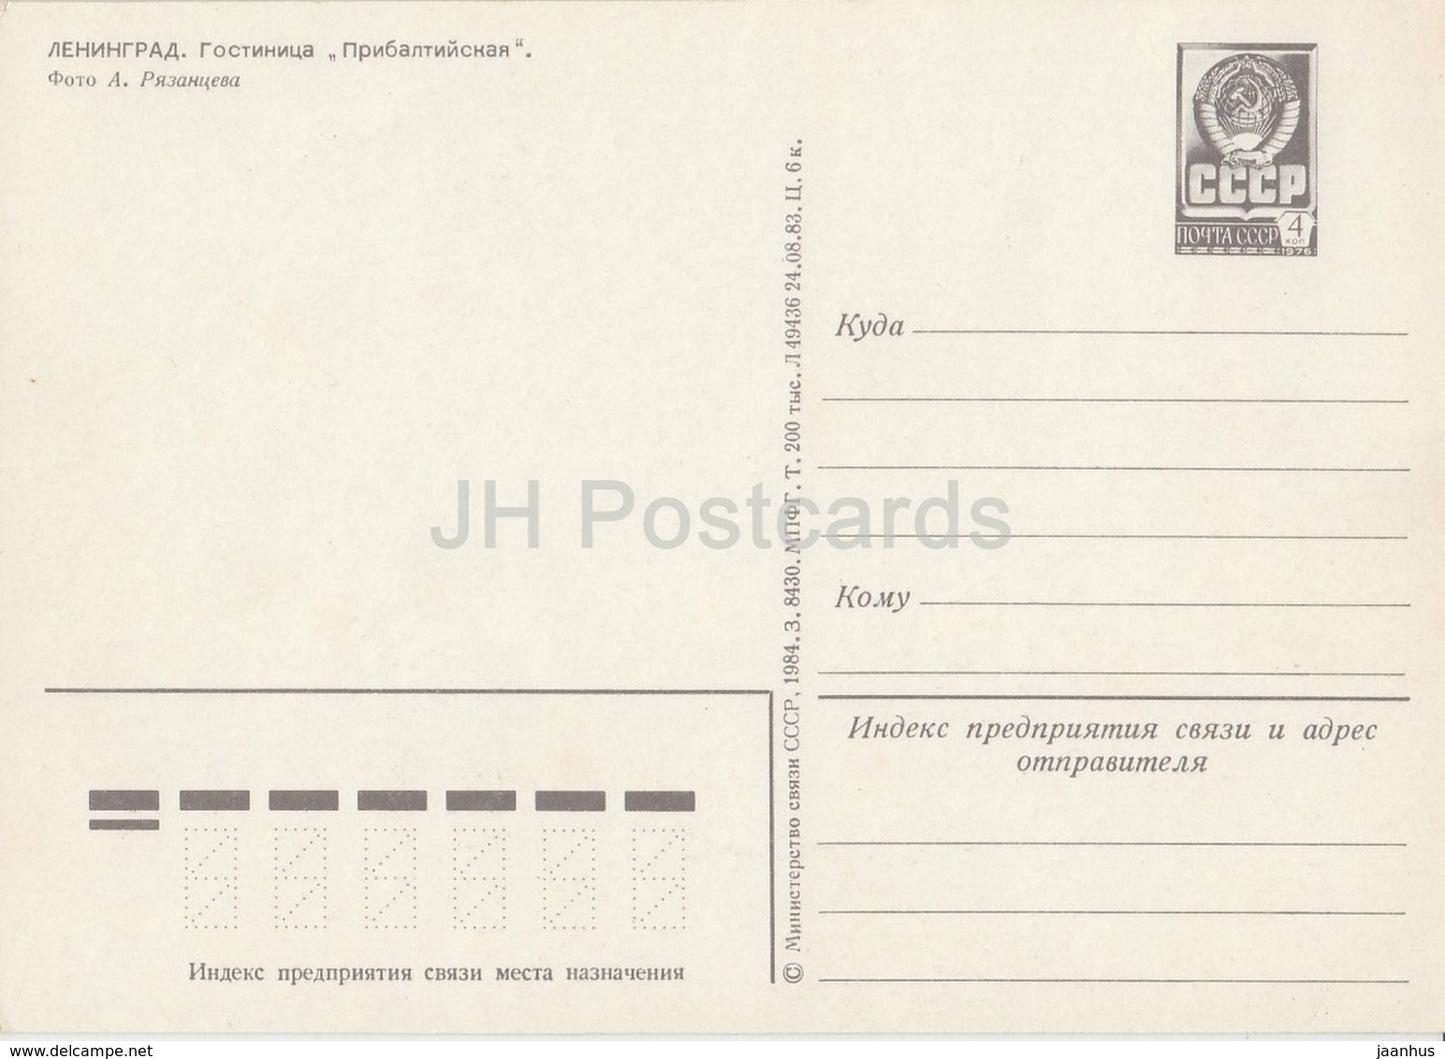 Leningrad - St. Petersburg - hotel Pribaltiyskaya - postal stationery - 1984 - Russia USSR - unused